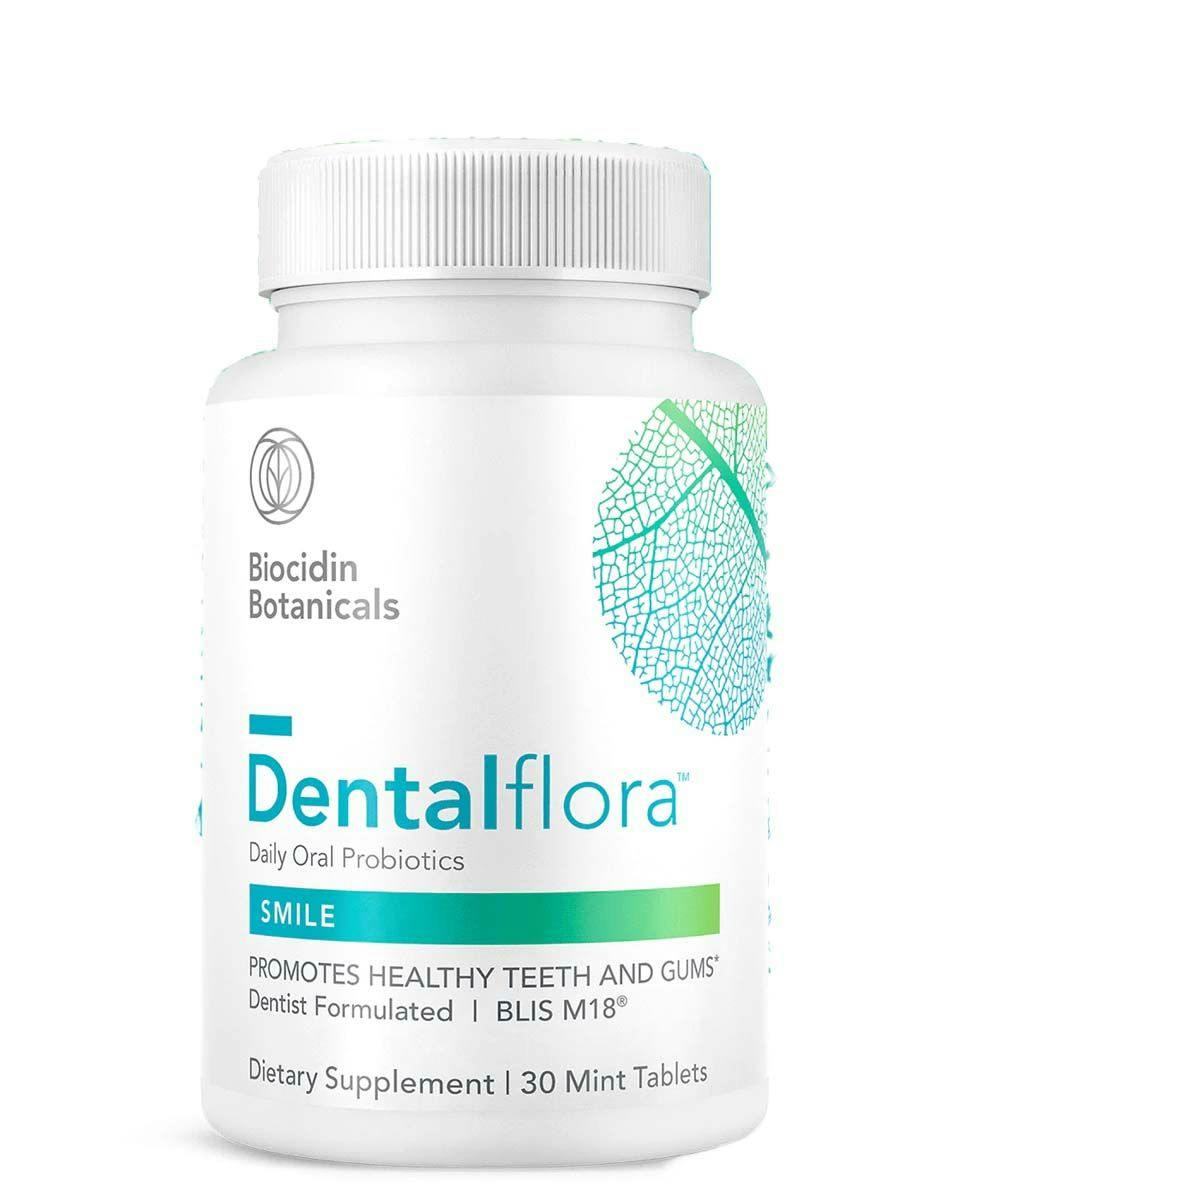 Dentalflora™ from Biocidin Botanicals. Image credit: © Biocidin Botanicals